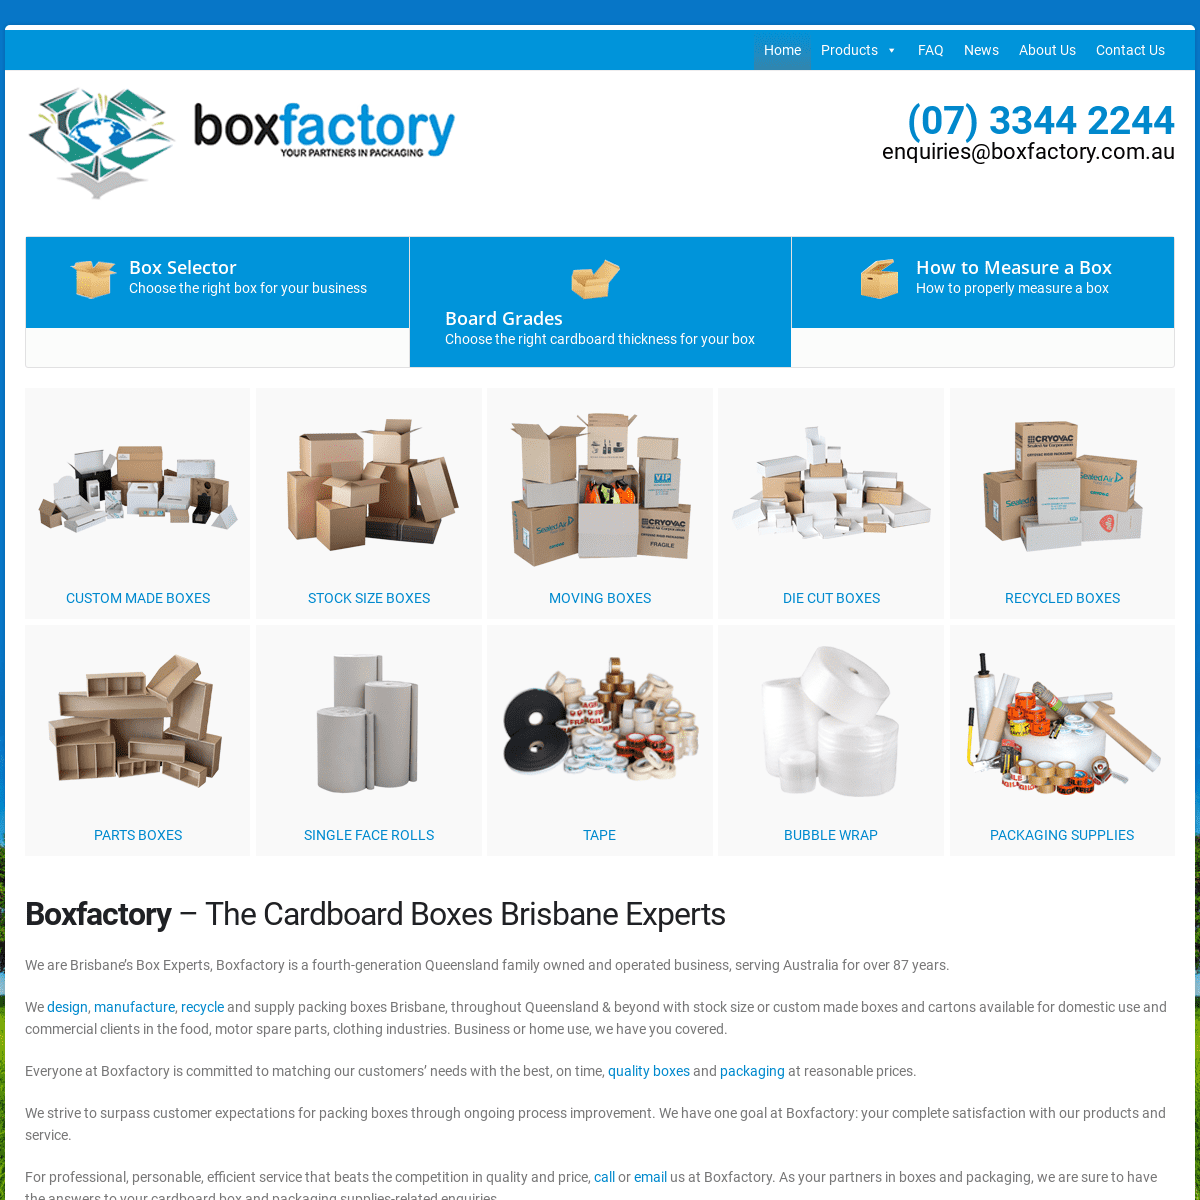 A complete backup of boxfactory.com.au